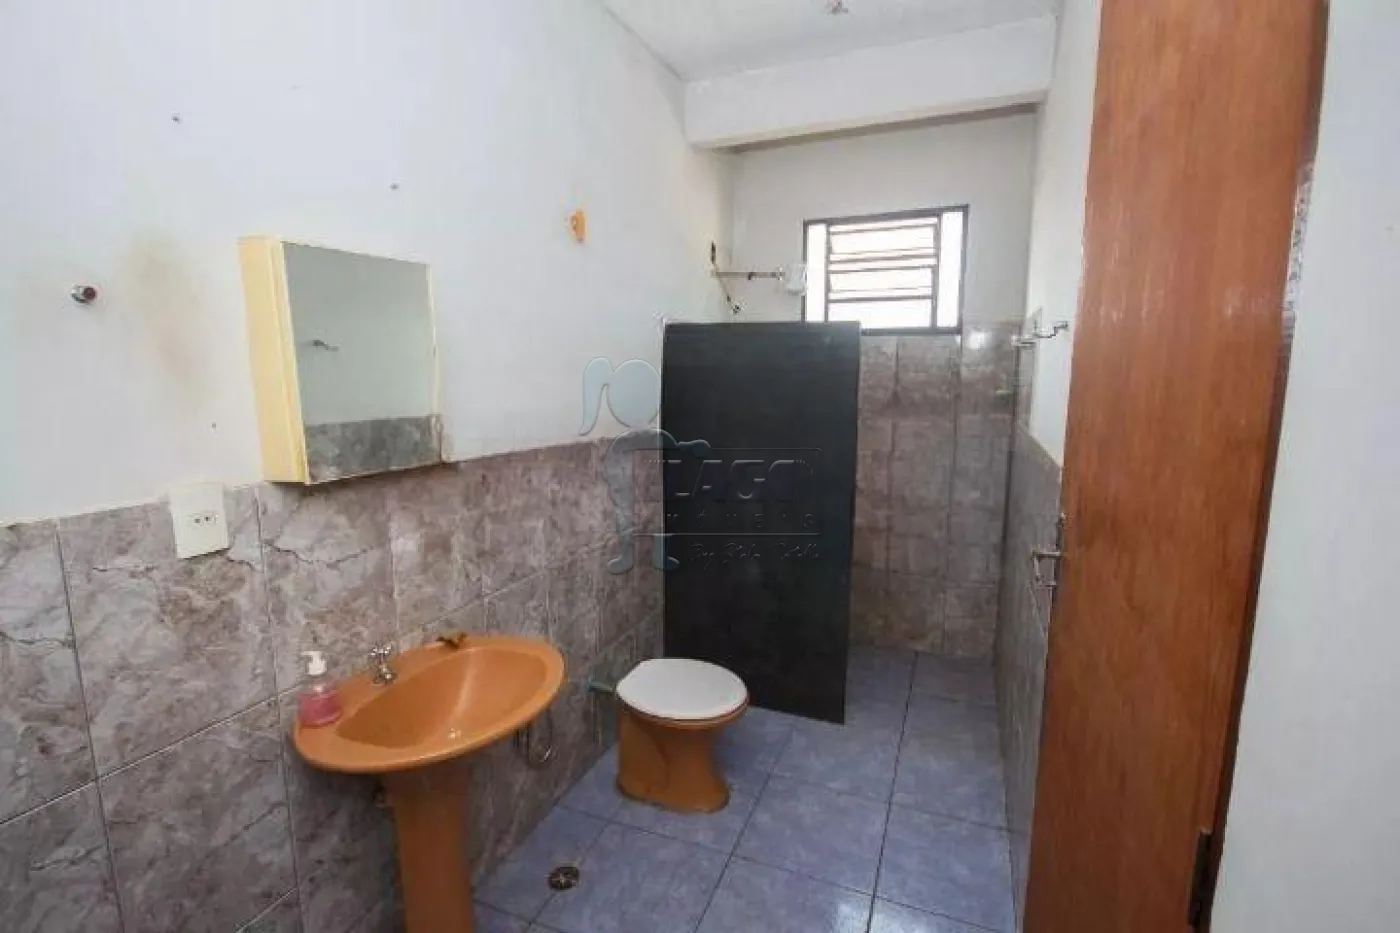 Alugar Casa / Padrão em Ribeirão Preto R$ 2.500,00 - Foto 5